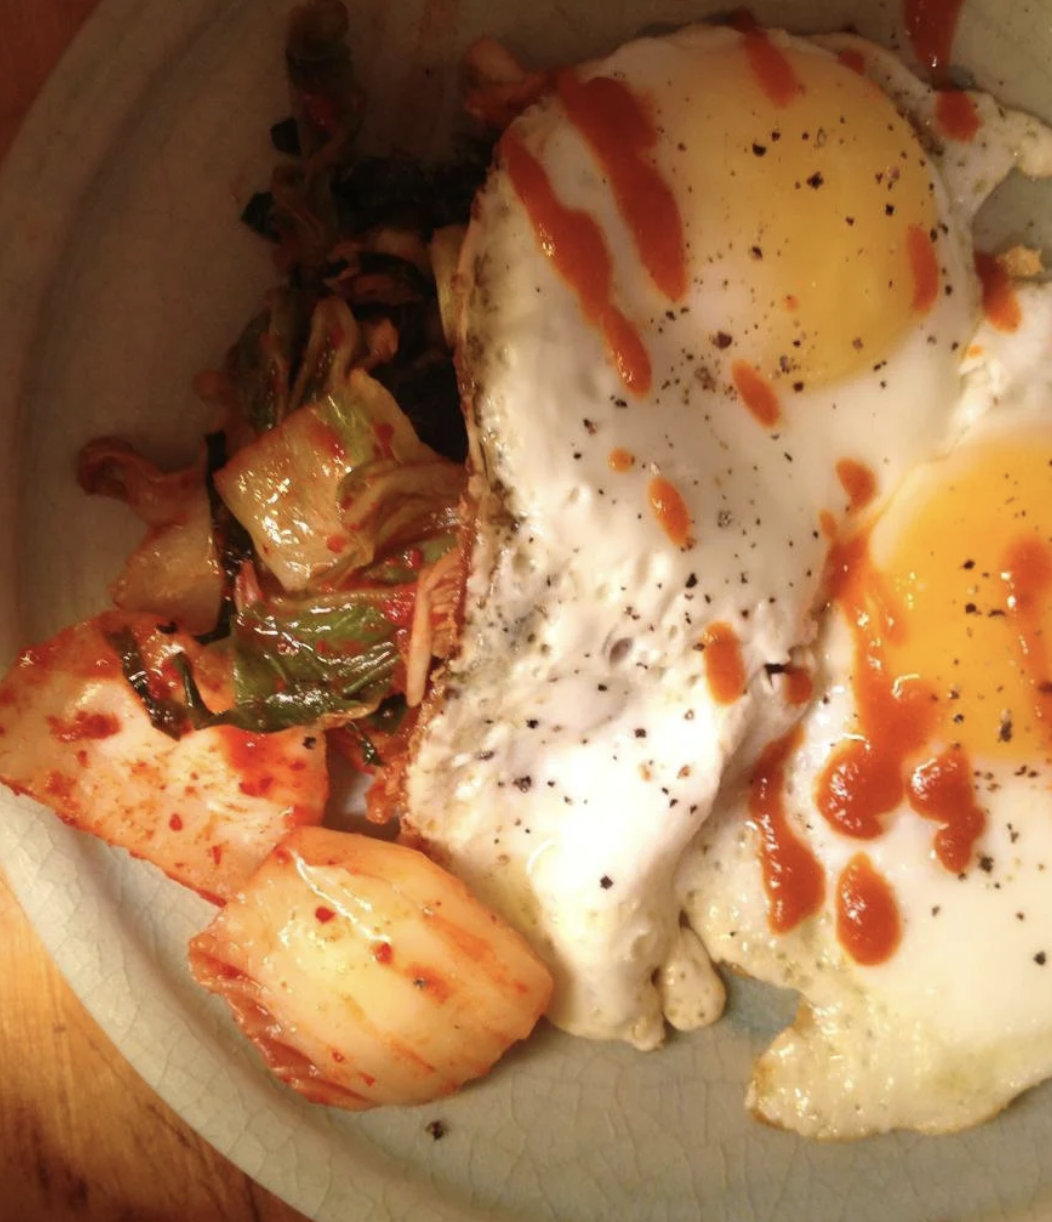 Kimchi with fried egg